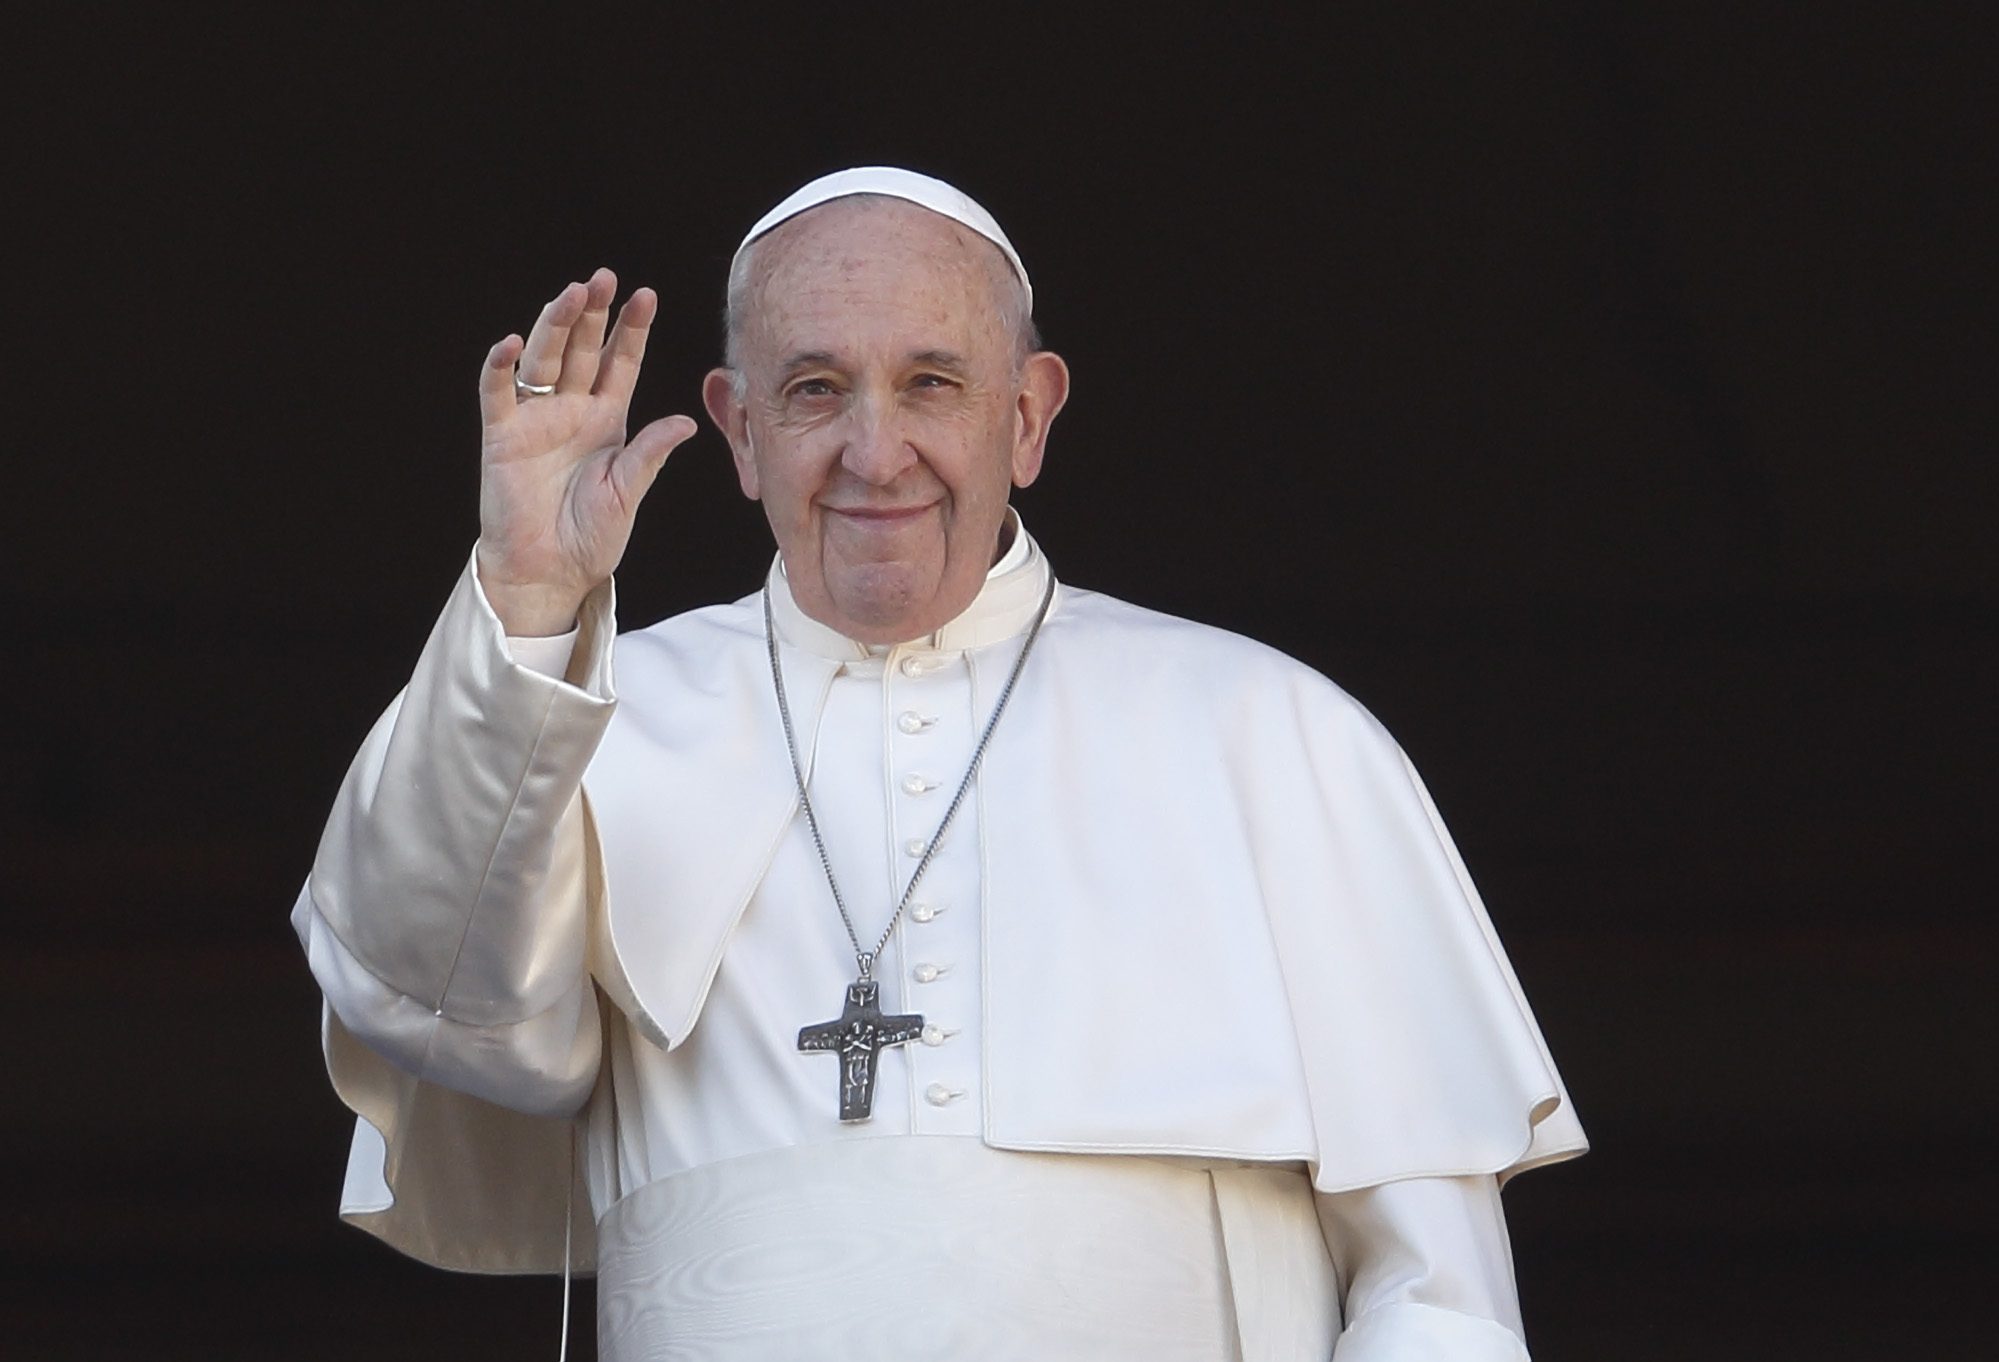 البابا فرنسيس: ضرورة أن نبقى قريبين بواسطة الصلاة والدعم الملموس من السكان المنكوبين جراء الزلزال